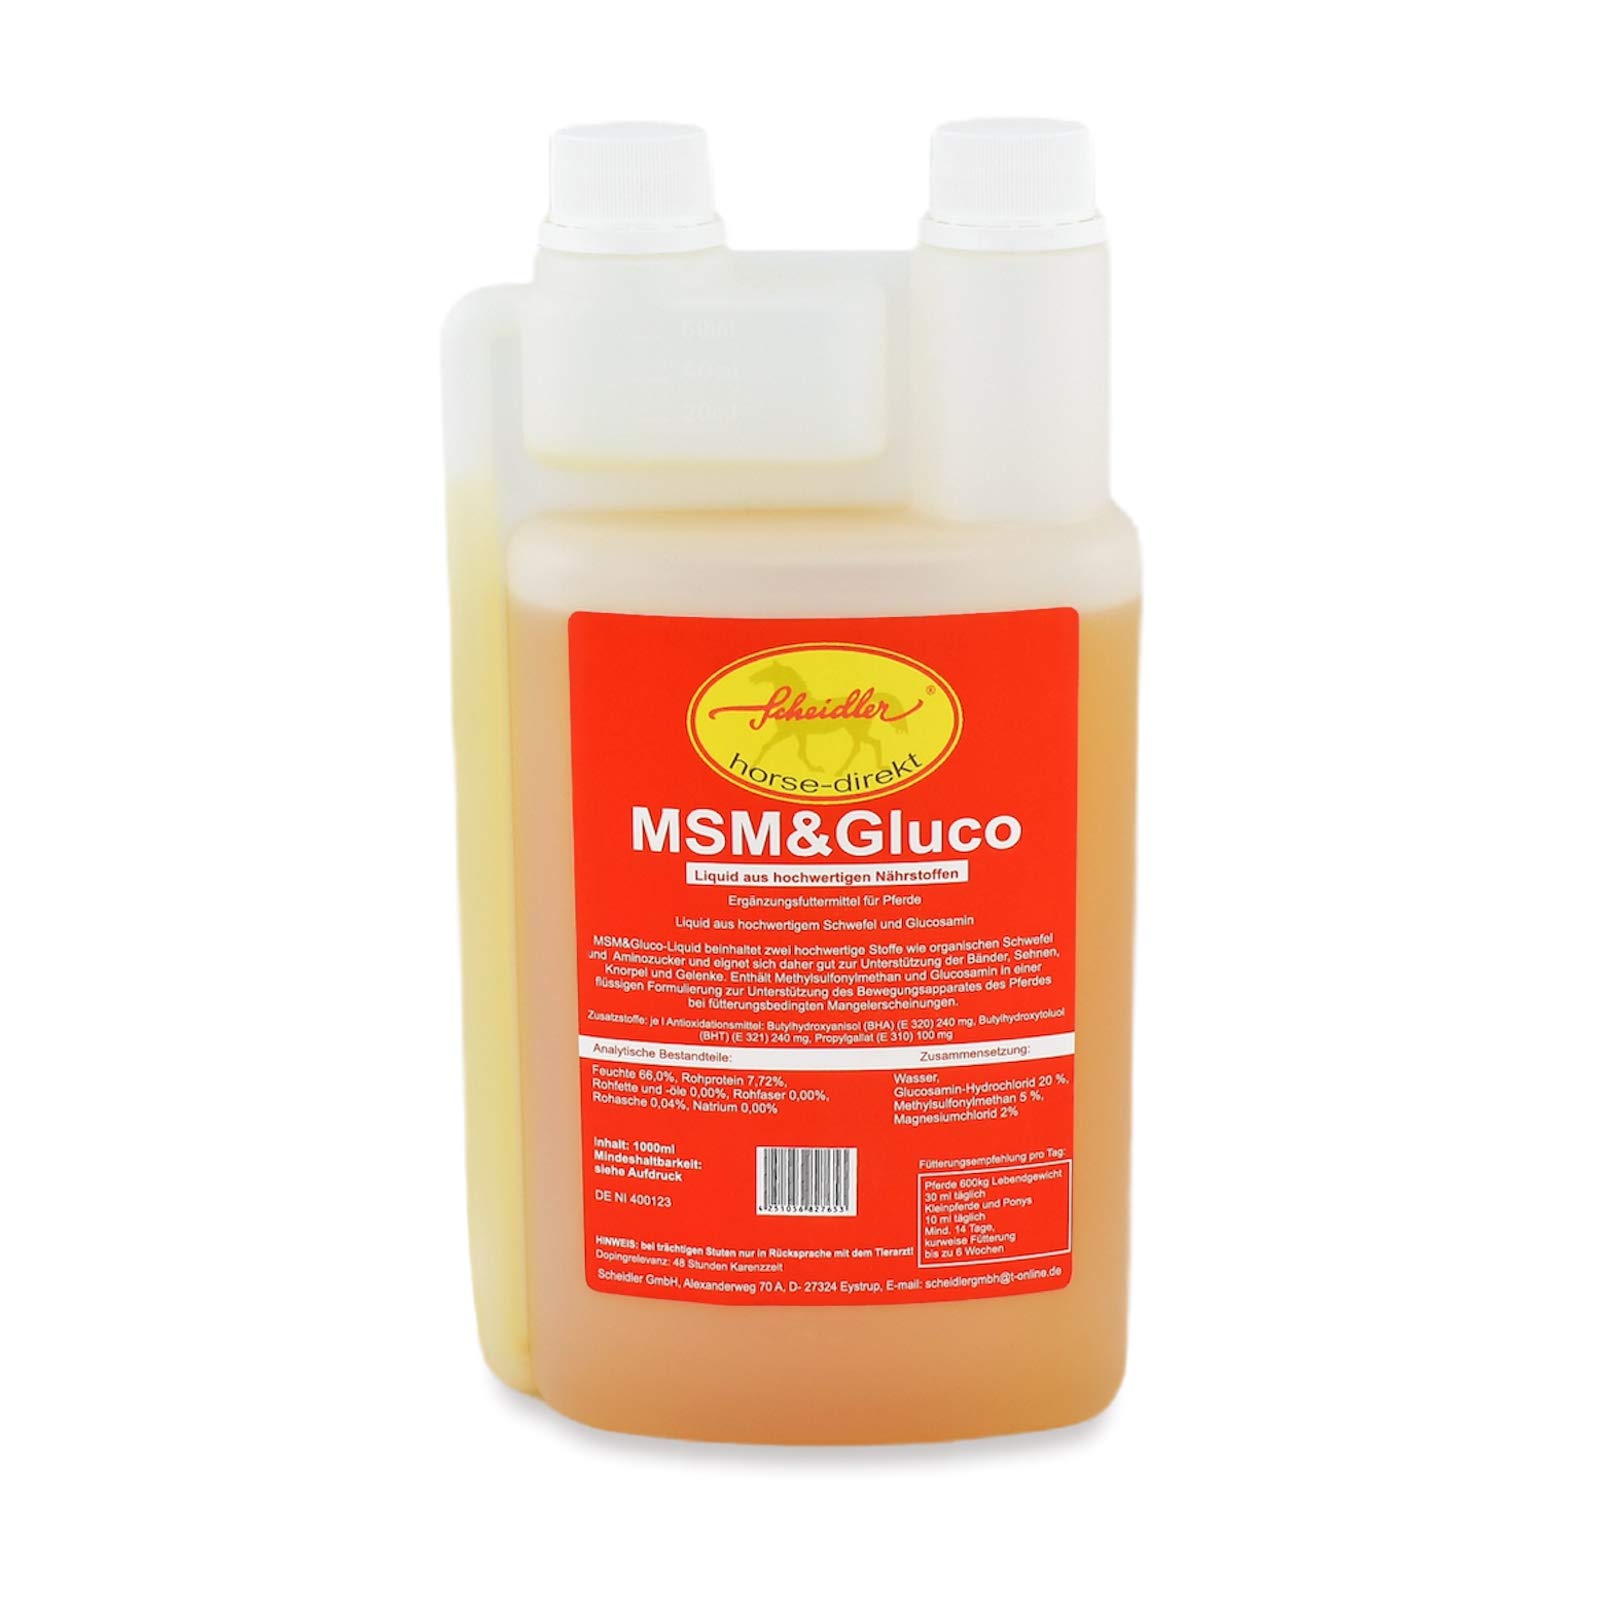 Scheidler horse-direkt MSM & Glucosamin Liquid 1 Liter Dosierflasche - Für Pferde und Ponys